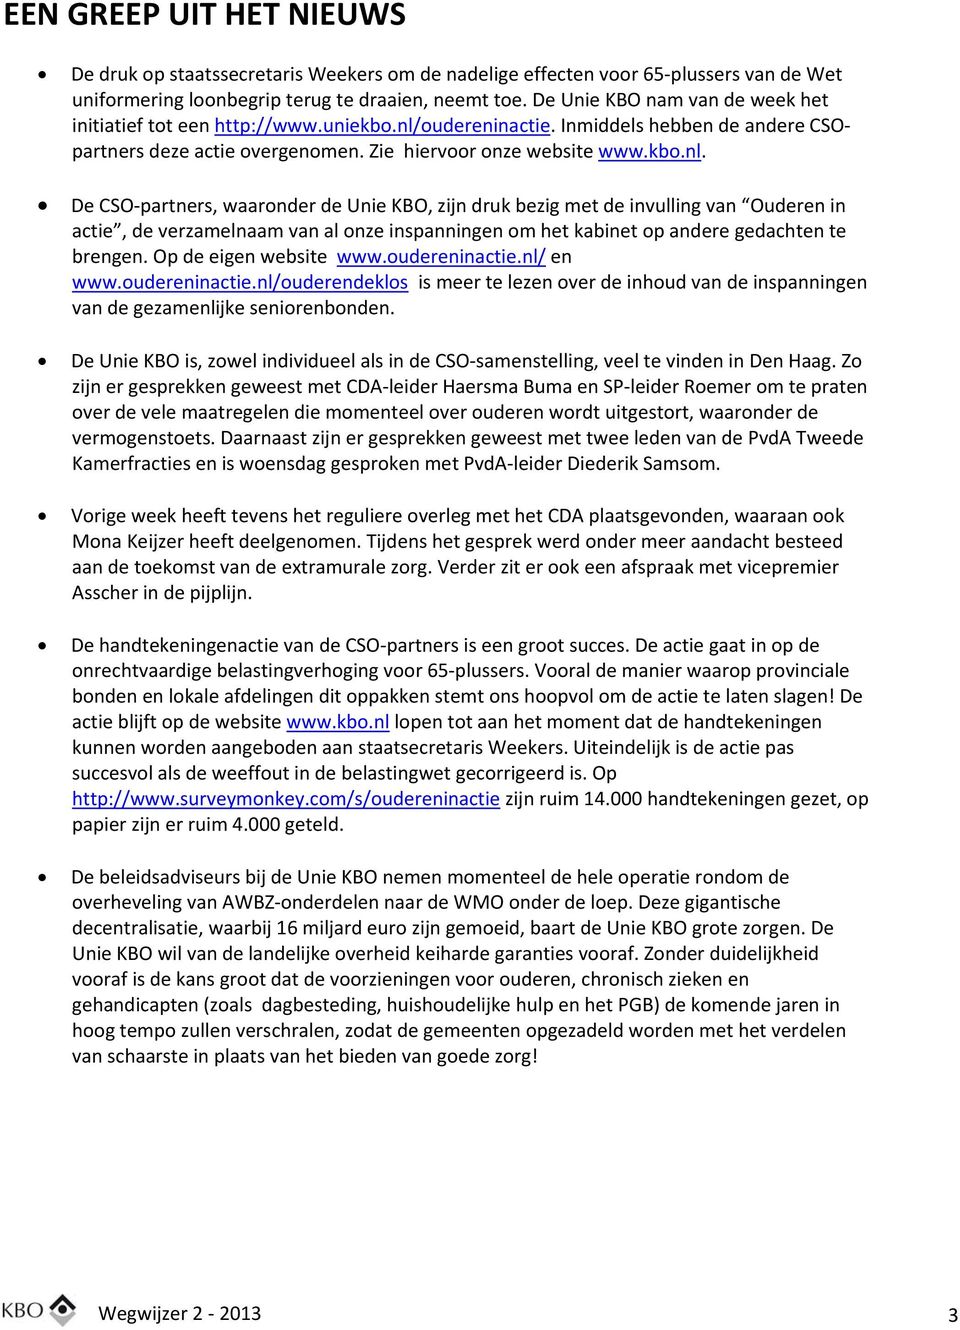 oudereninactie. Inmiddels hebben de andere CSOpartners deze actie overgenomen. Zie hiervoor onze website www.kbo.nl.